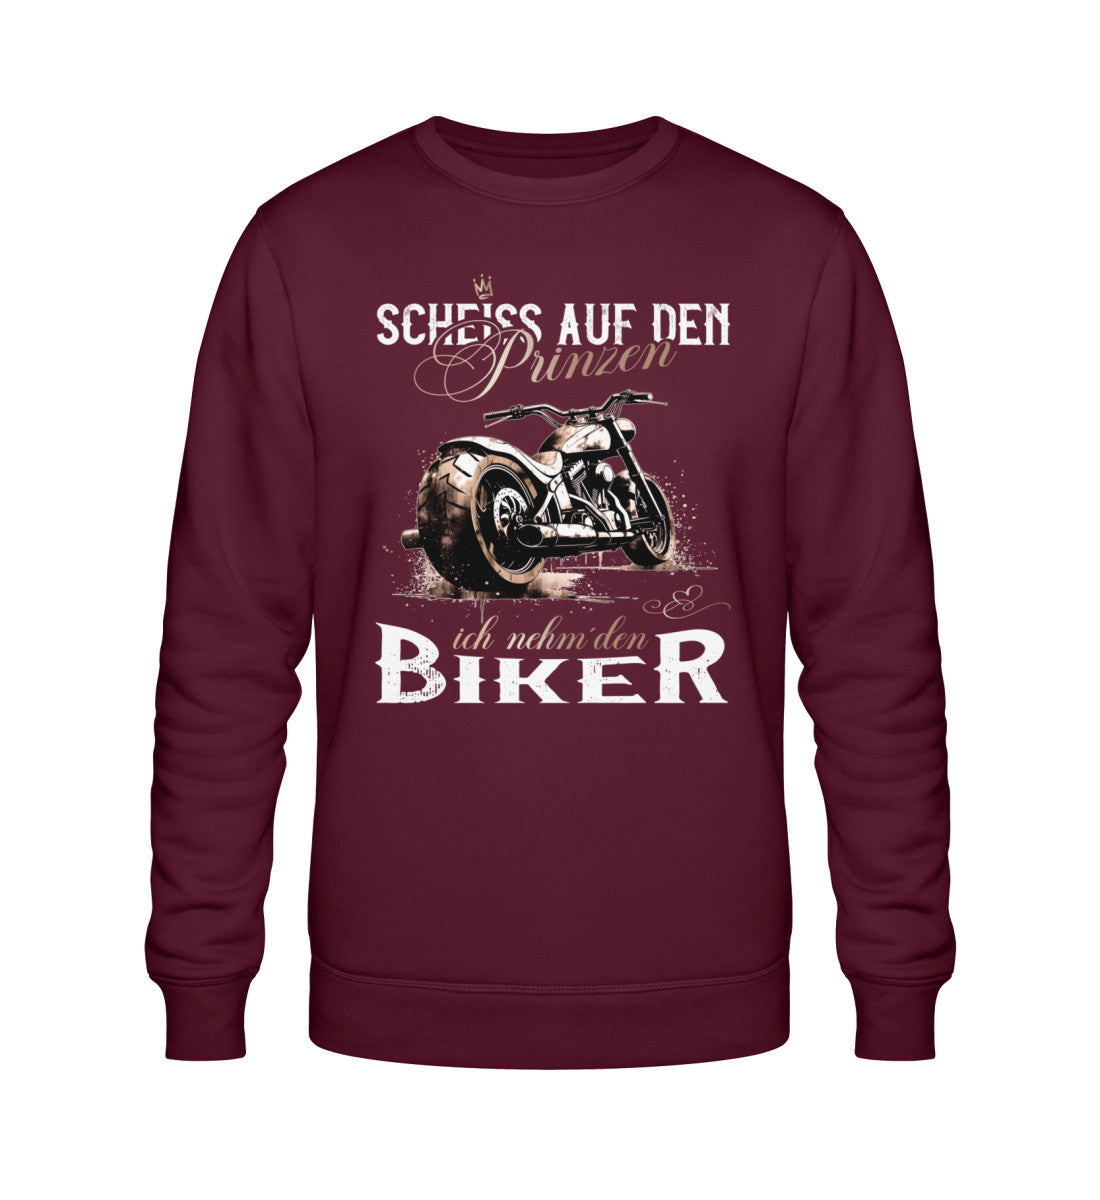 Ein Sweatshirt für Motorradfahrerinnen von Wingbikers mit dem Aufdruck, Scheiß auf den Prinzen, ich nehm' den Biker, in burgunder weinrot.